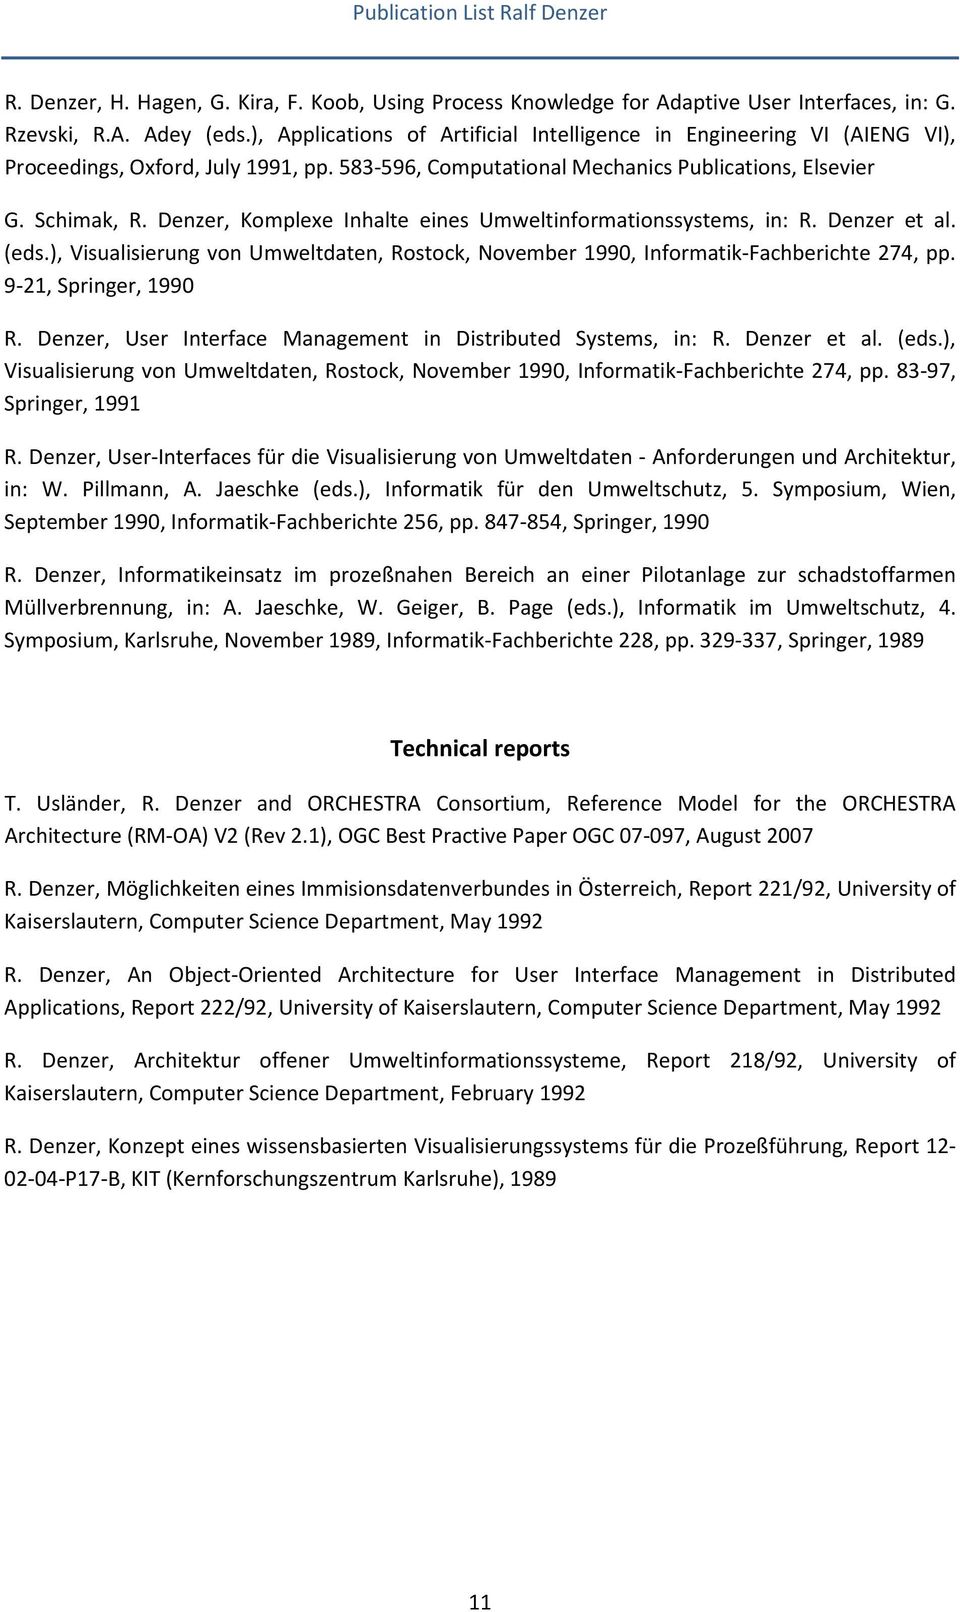 Denzer, Komplexe Inhalte eines Umweltinformationssystems, in: R. Denzer et al. (eds.), Visualisierung von Umweltdaten, Rostock, November 1990, Informatik-Fachberichte 274, pp. 9-21, Springer, 1990 R.